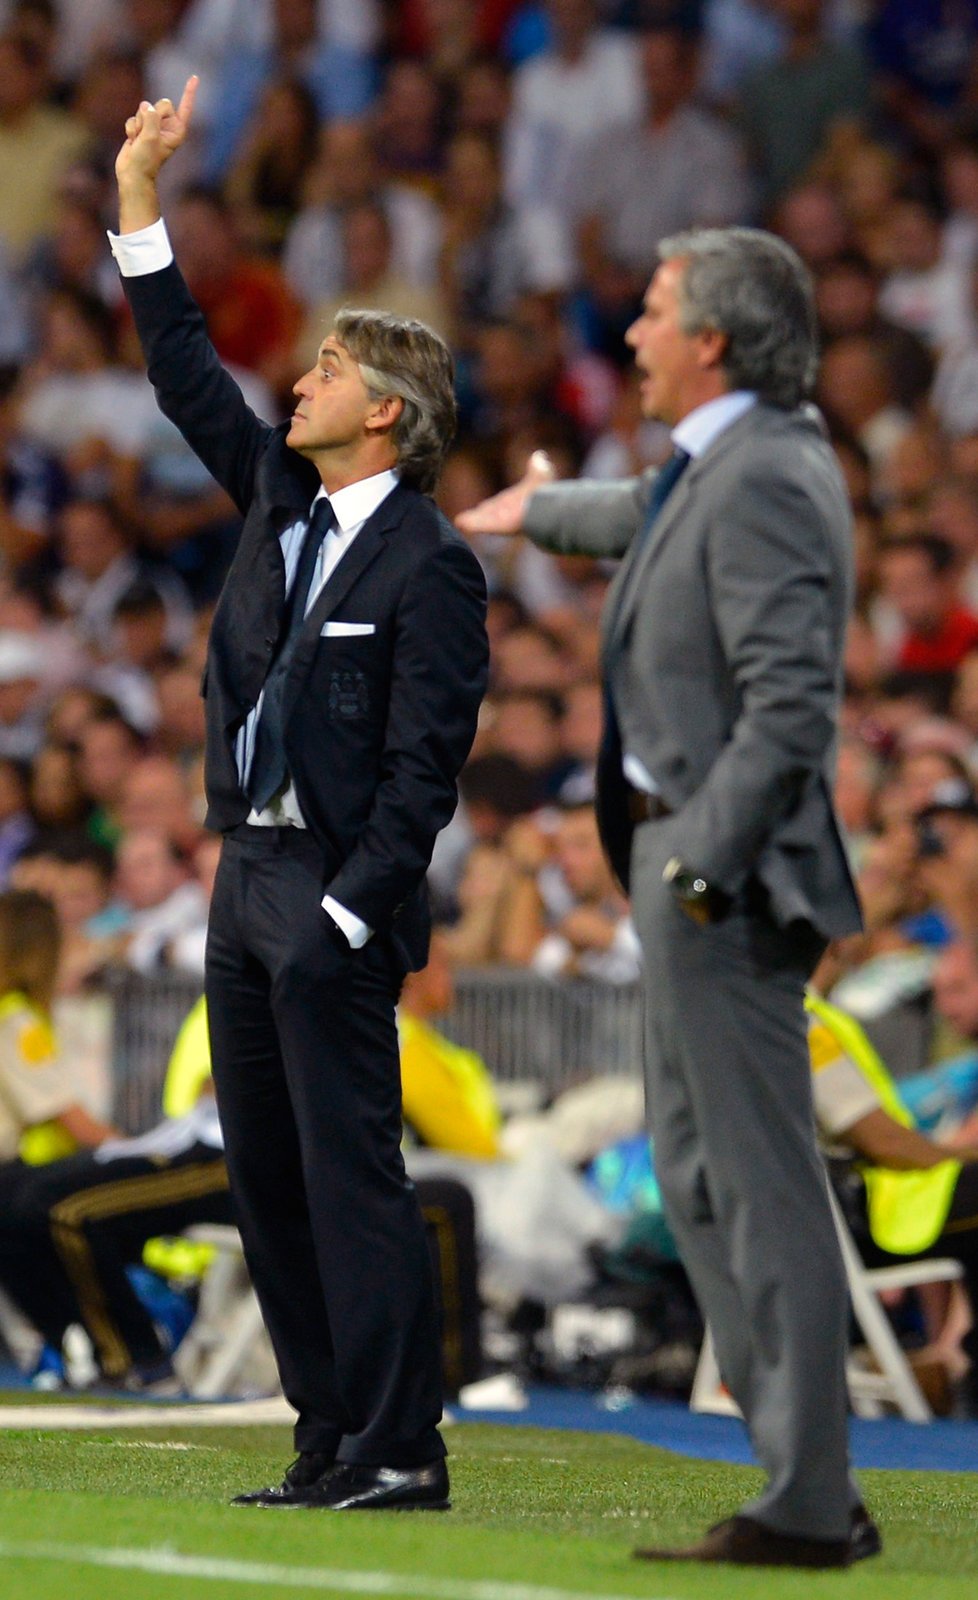 Portugalec José Mourinho, trenér Realu Madrid, gestikuluje při úterním zápase Ligy mistrů, kdy hrál jeho tým s Manchesterem City. Před lavičkou vydával pokyny i kouč anglického celku Roberto Mancini.